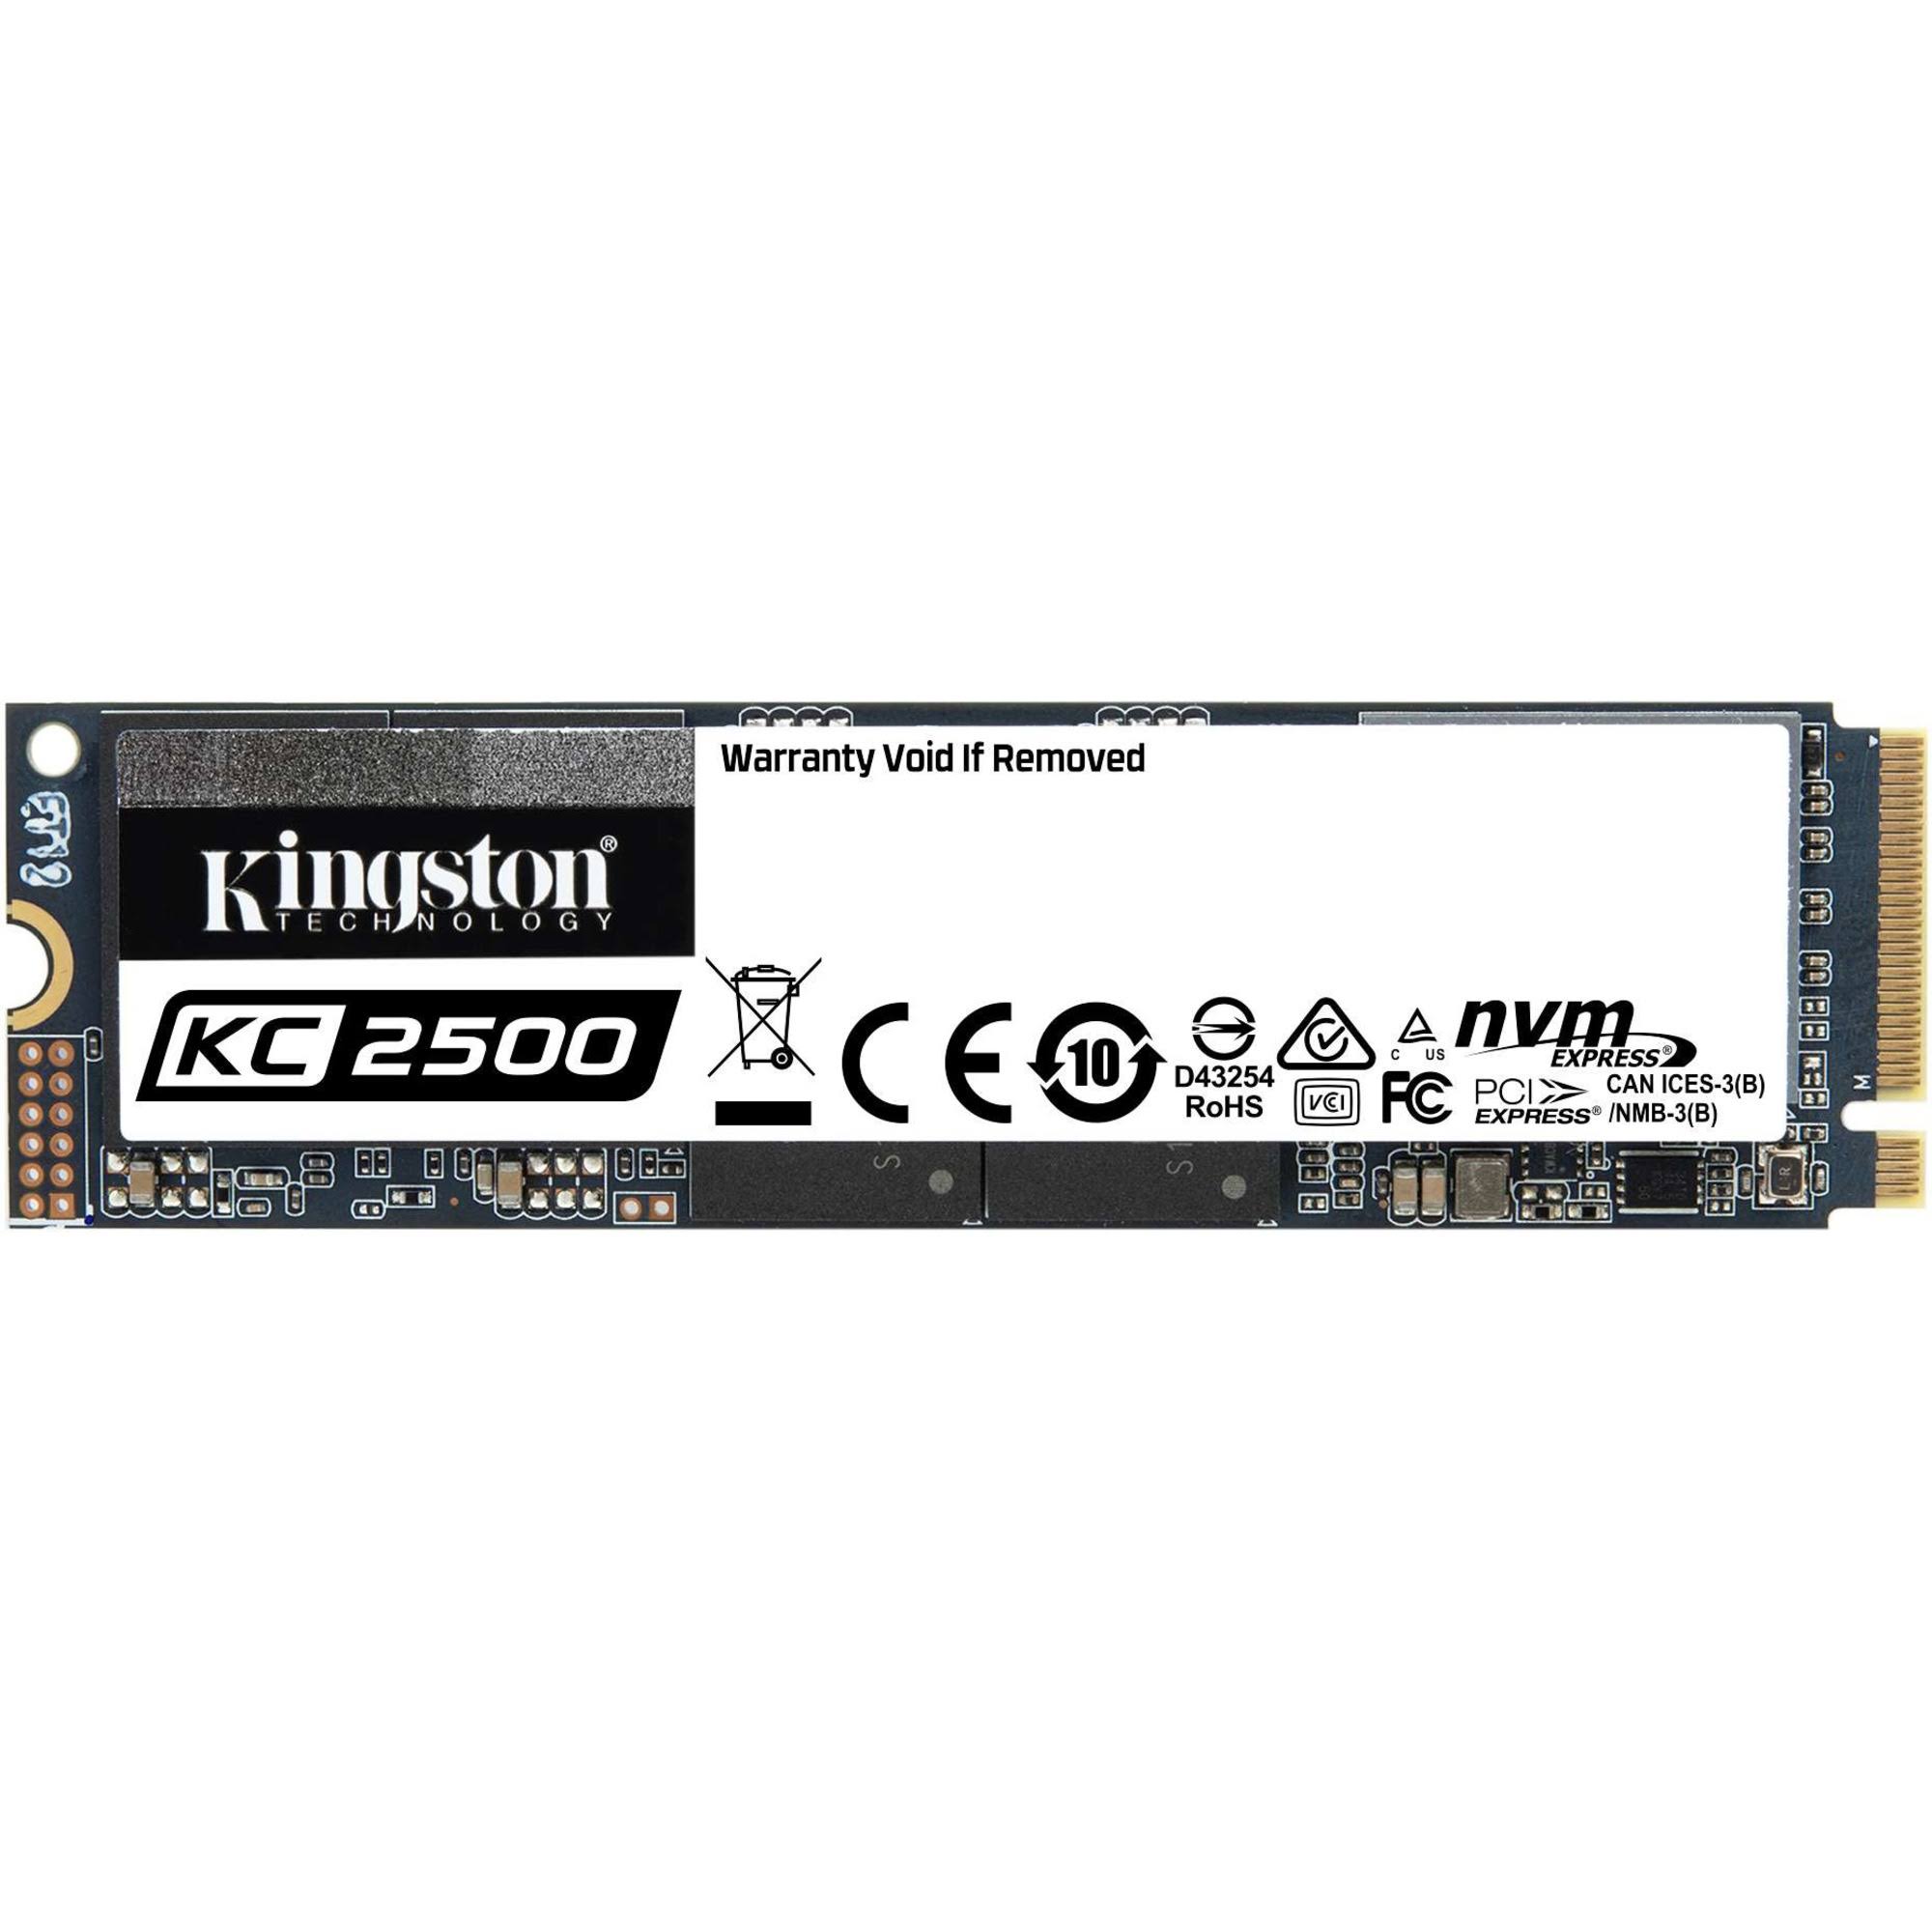 Kingston KC2500 250 GB Solid State Drive - M.2 2280 Internal - PCI Express NVMe